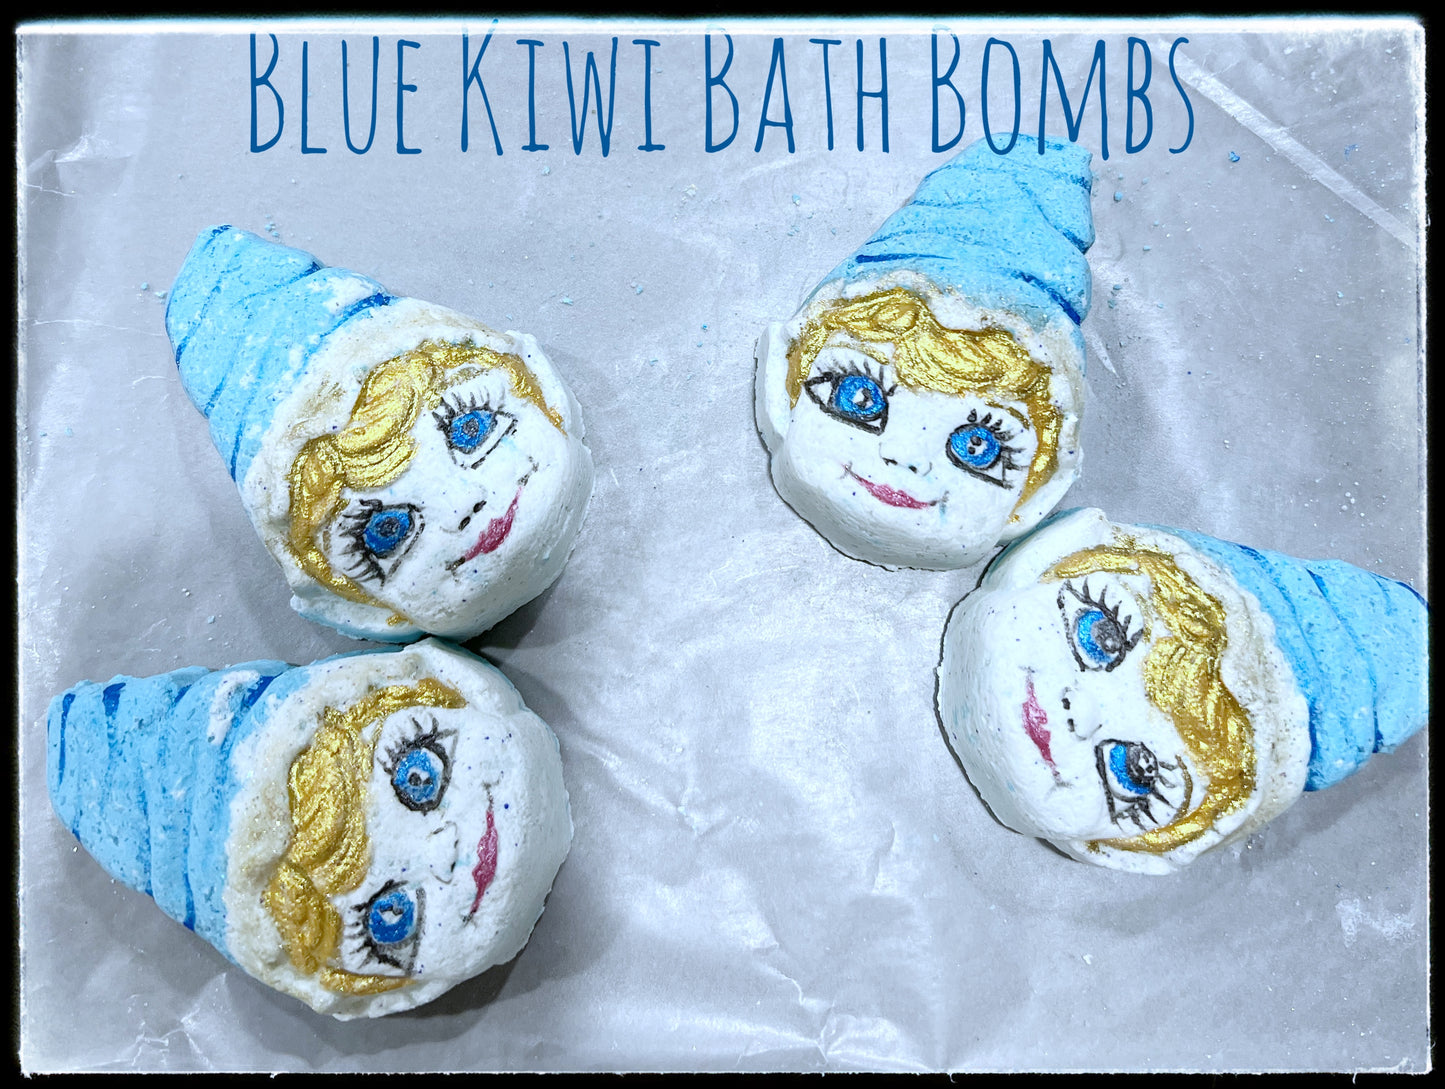 Blue Kiwi Elf Bath Bombs